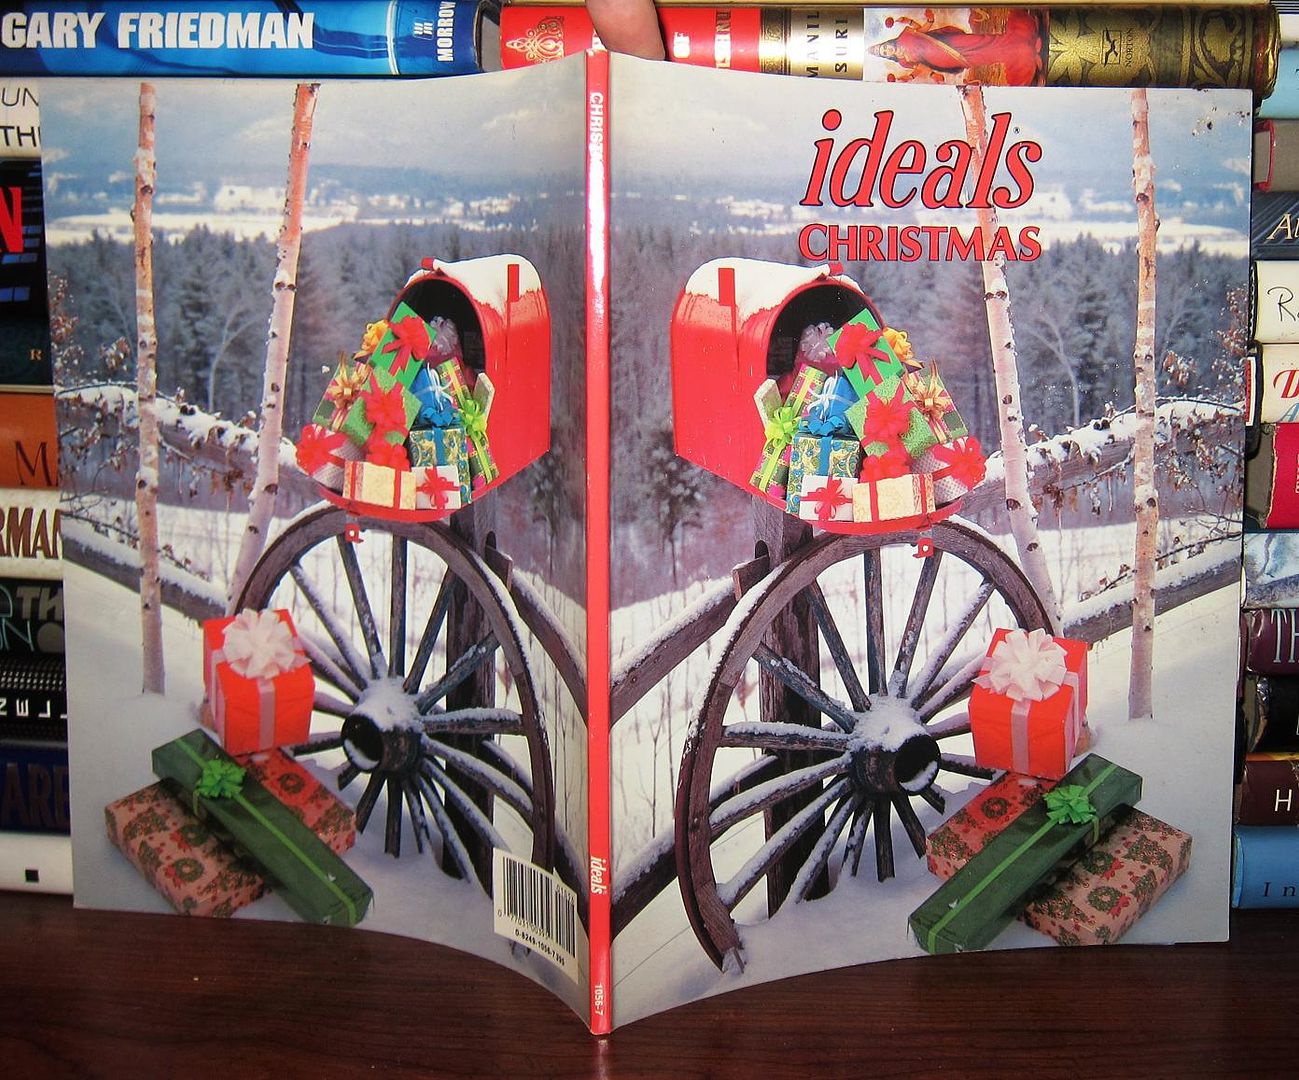 INC, IDEALS PUBLICATIONS - Christmas Ideals